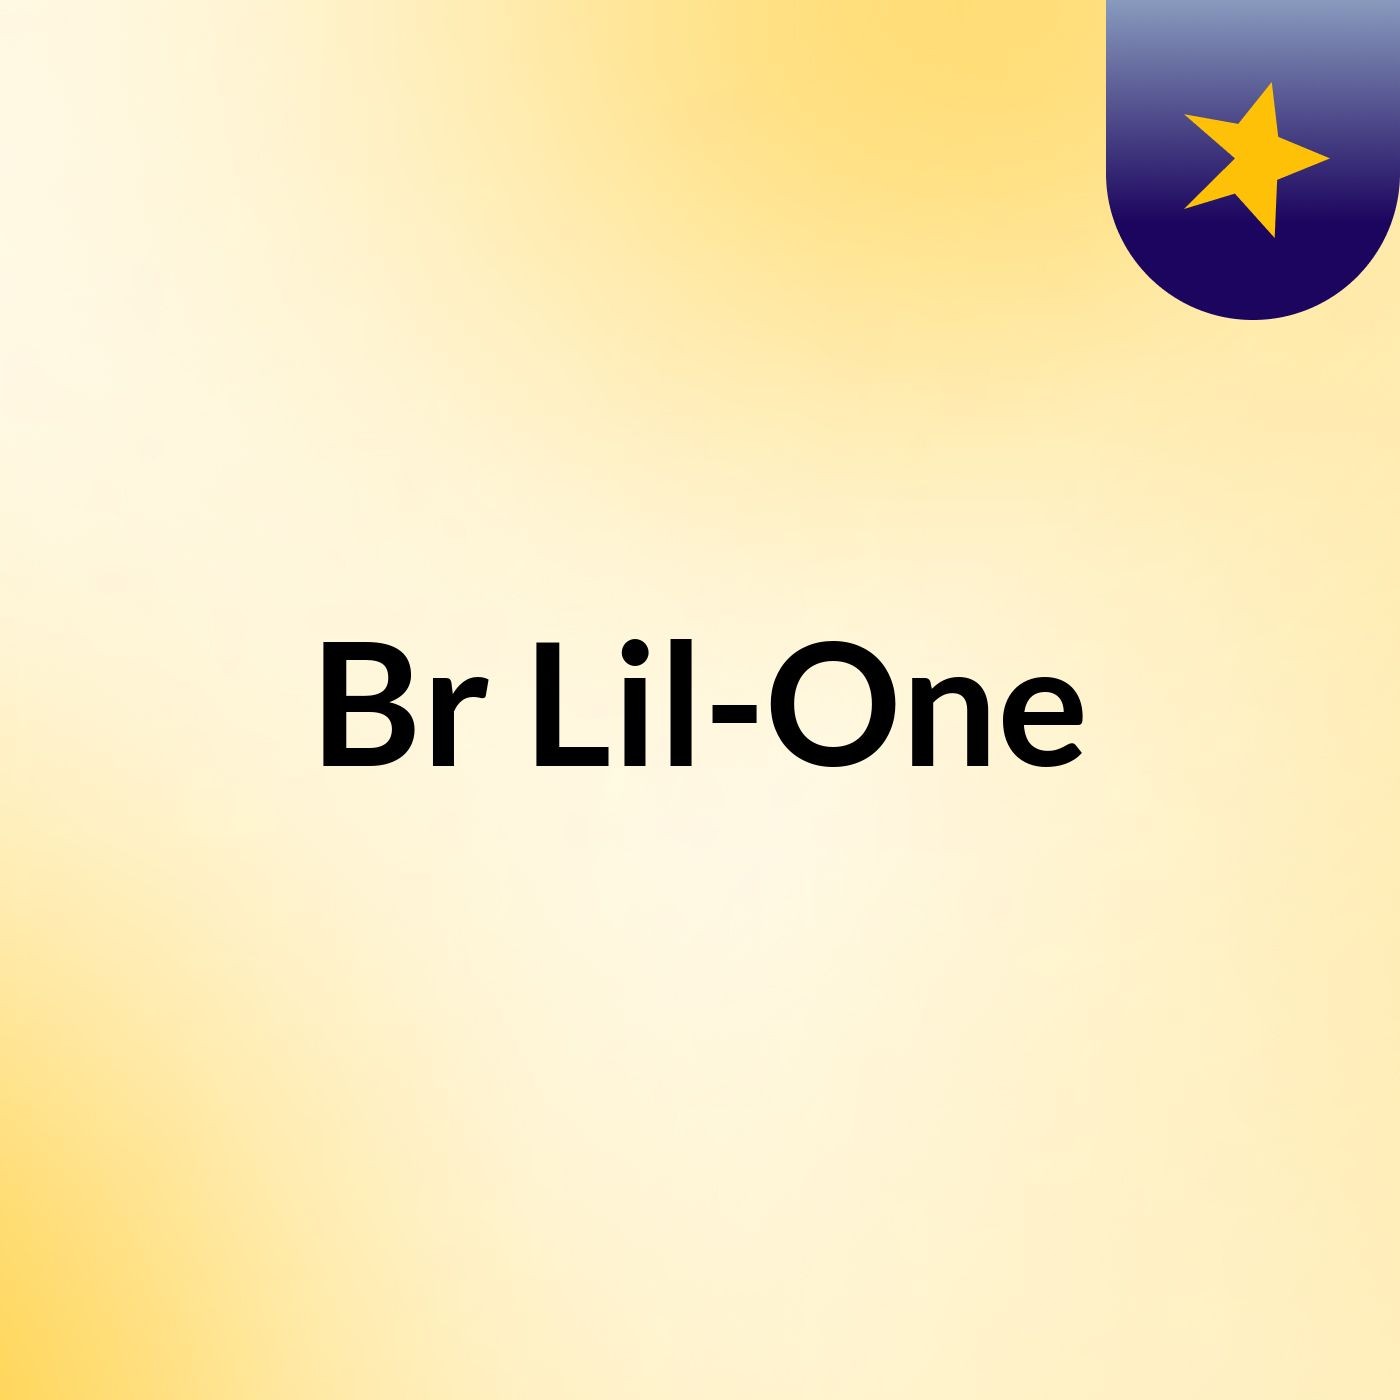 Episode 3 - Br Lilone show